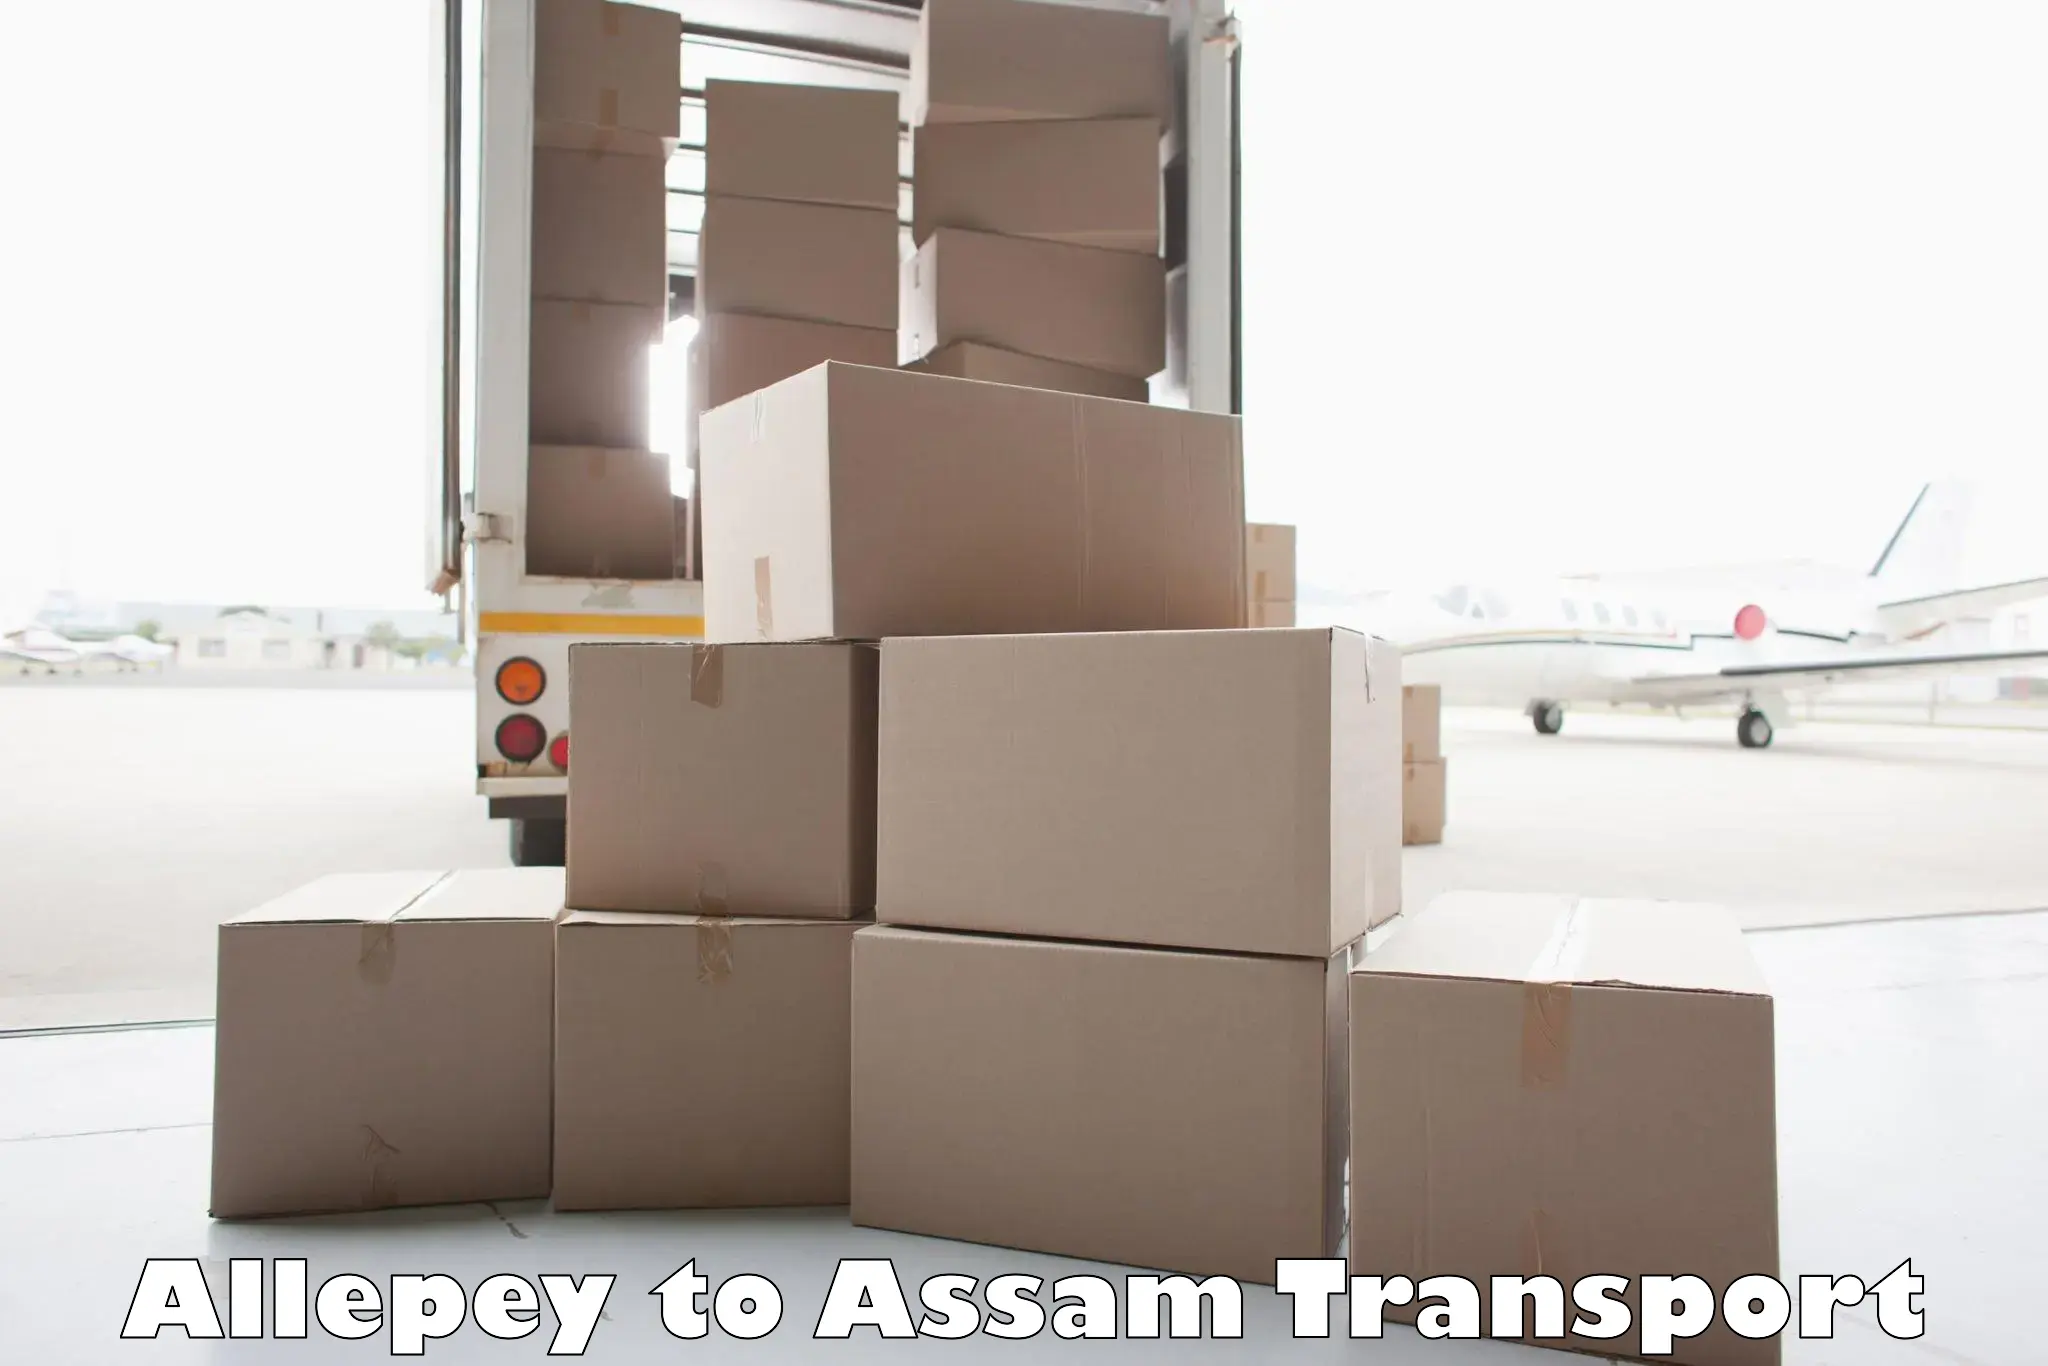 Furniture transport service Allepey to Mazbat